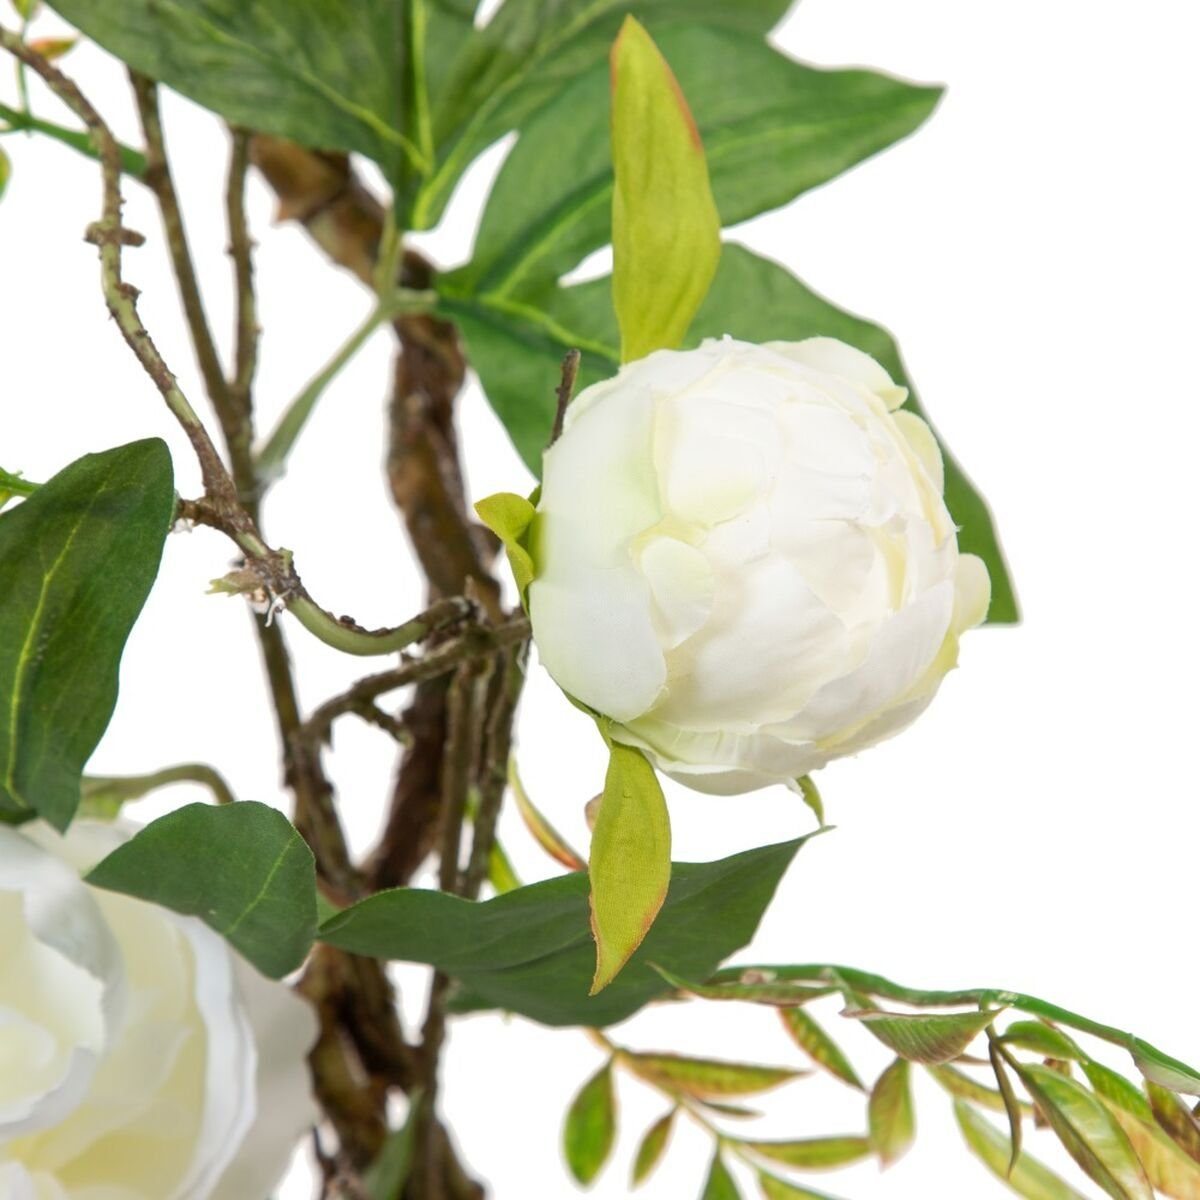 x cm Bigbuy, 24 x 24 160 cm Künstliche Höhe Deko-Blumen Weiß 30 Zimmerpflanze Pfingstrose,